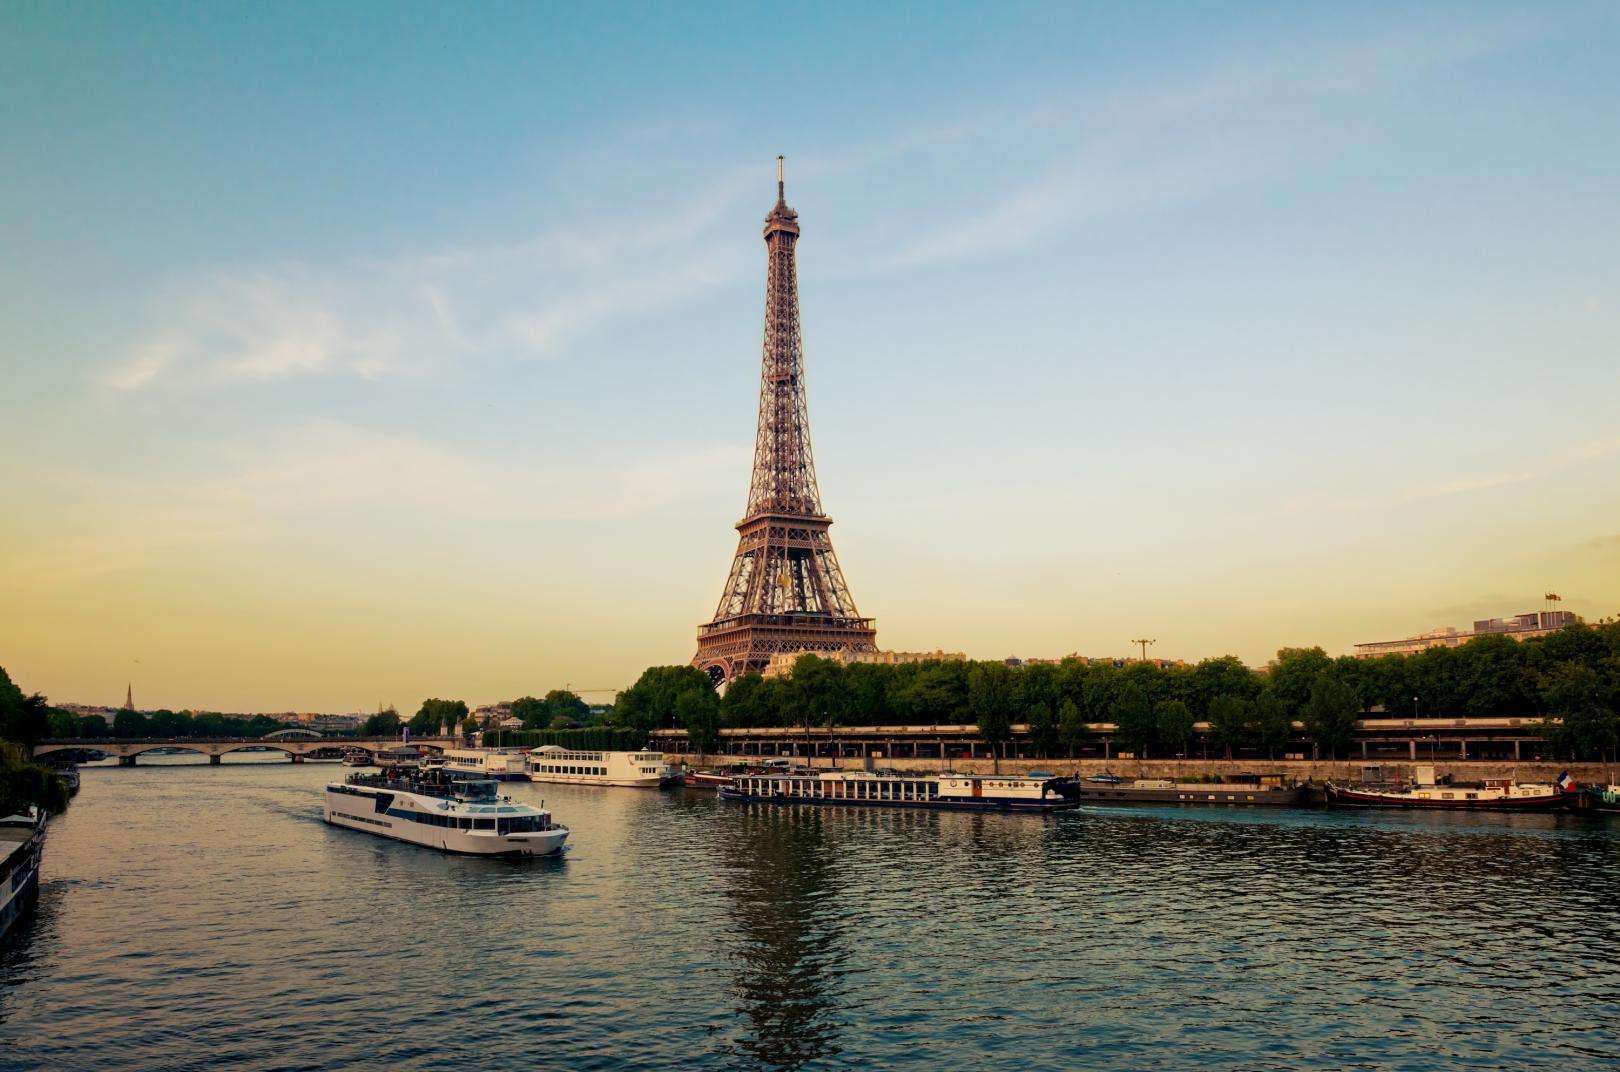 Croisière sur la Seine : Un moment magique à bord du Capitaine Fracasse